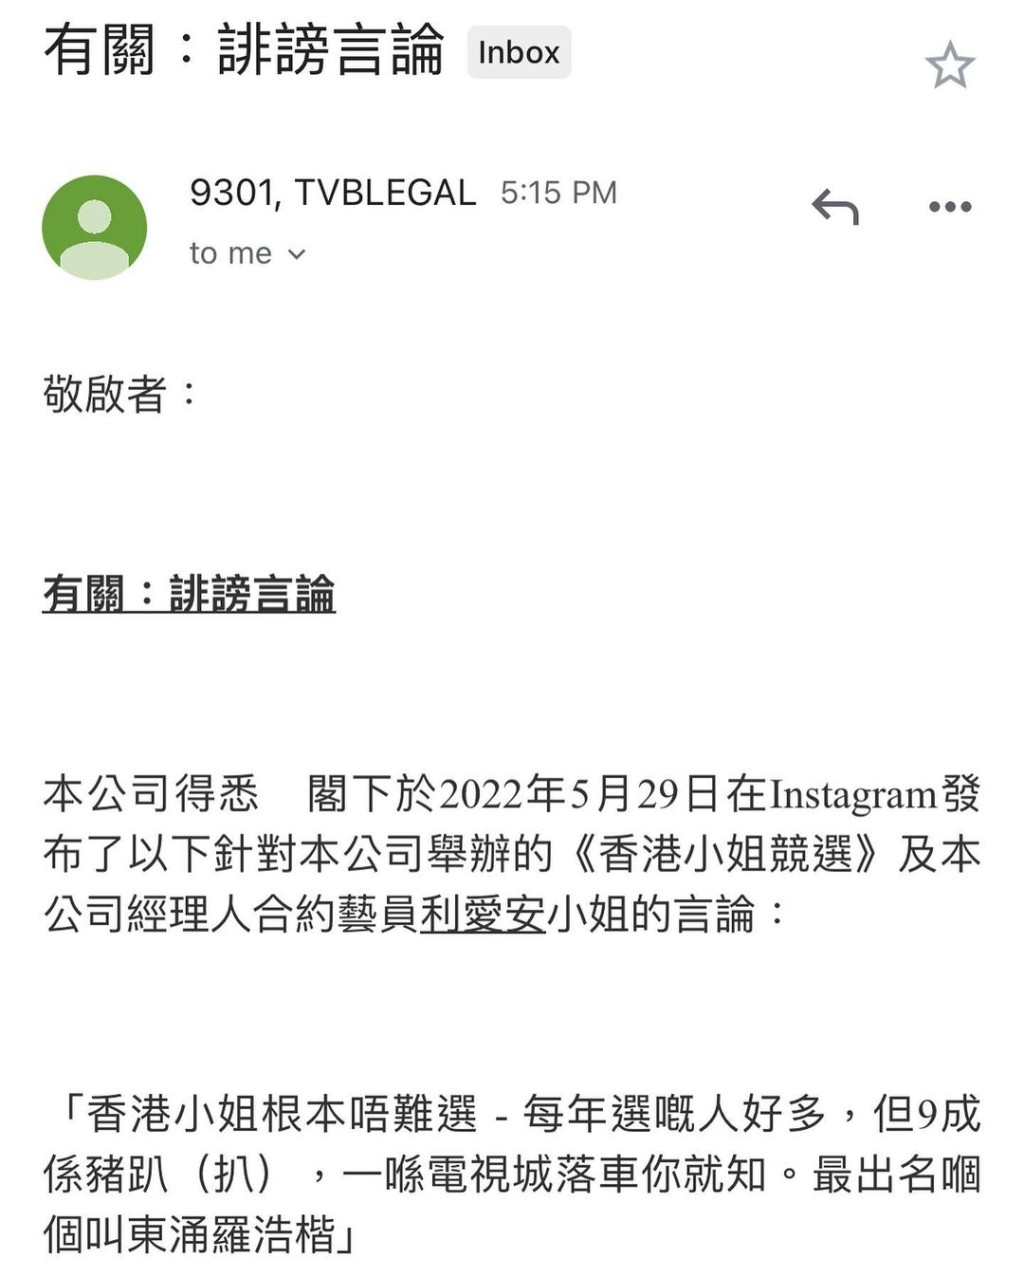 林作貼出似是TVB發給他的律師信。